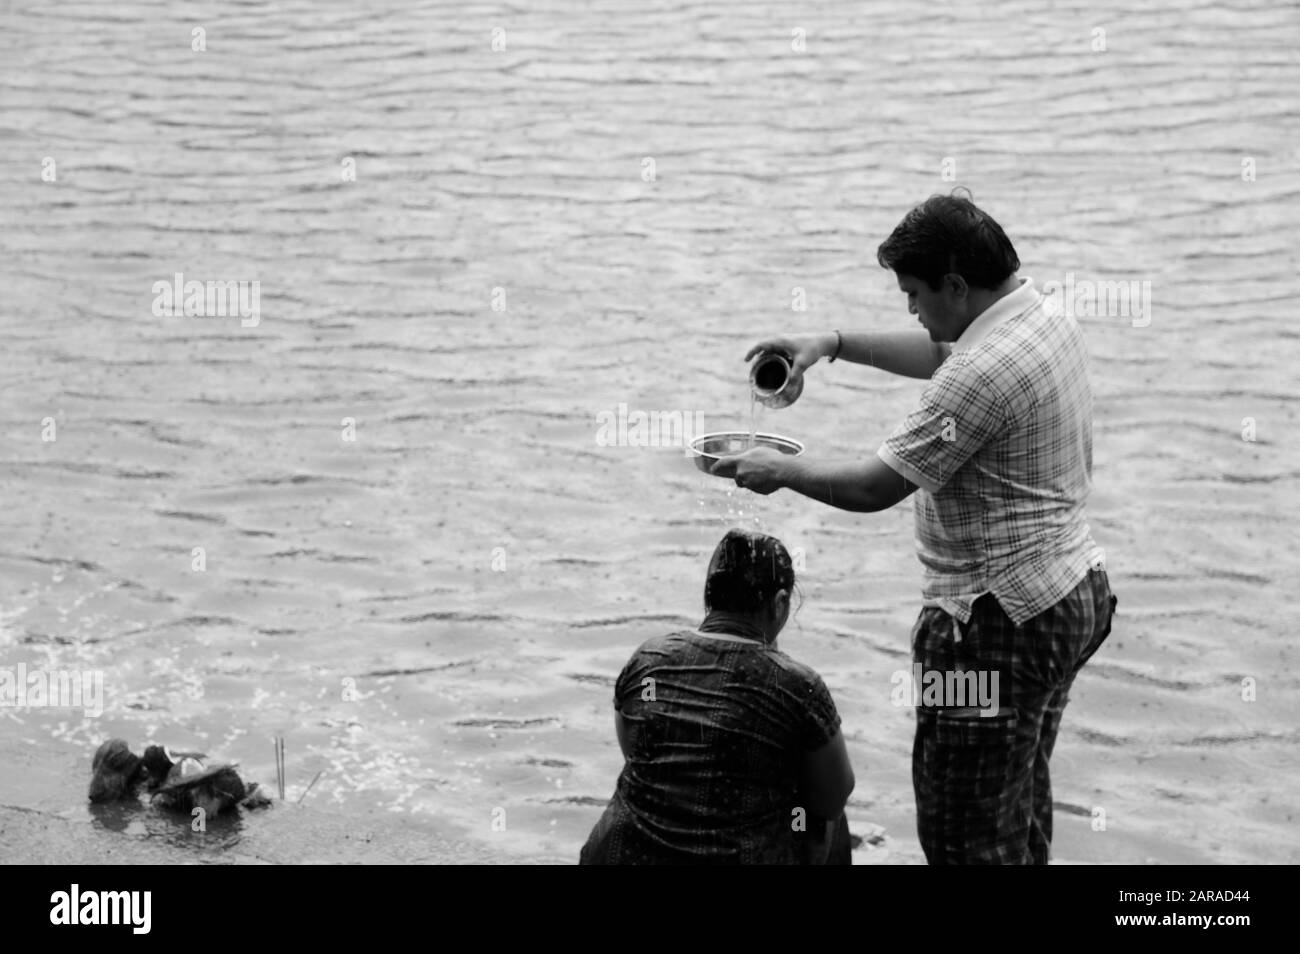 Rituel hindou étrange, homme versant de l'eau sur la femme, réservoir d'eau Banganga, Walkeshwar, Malabar Hill, Mumbai, Maharashtra, Inde, Asie Banque D'Images